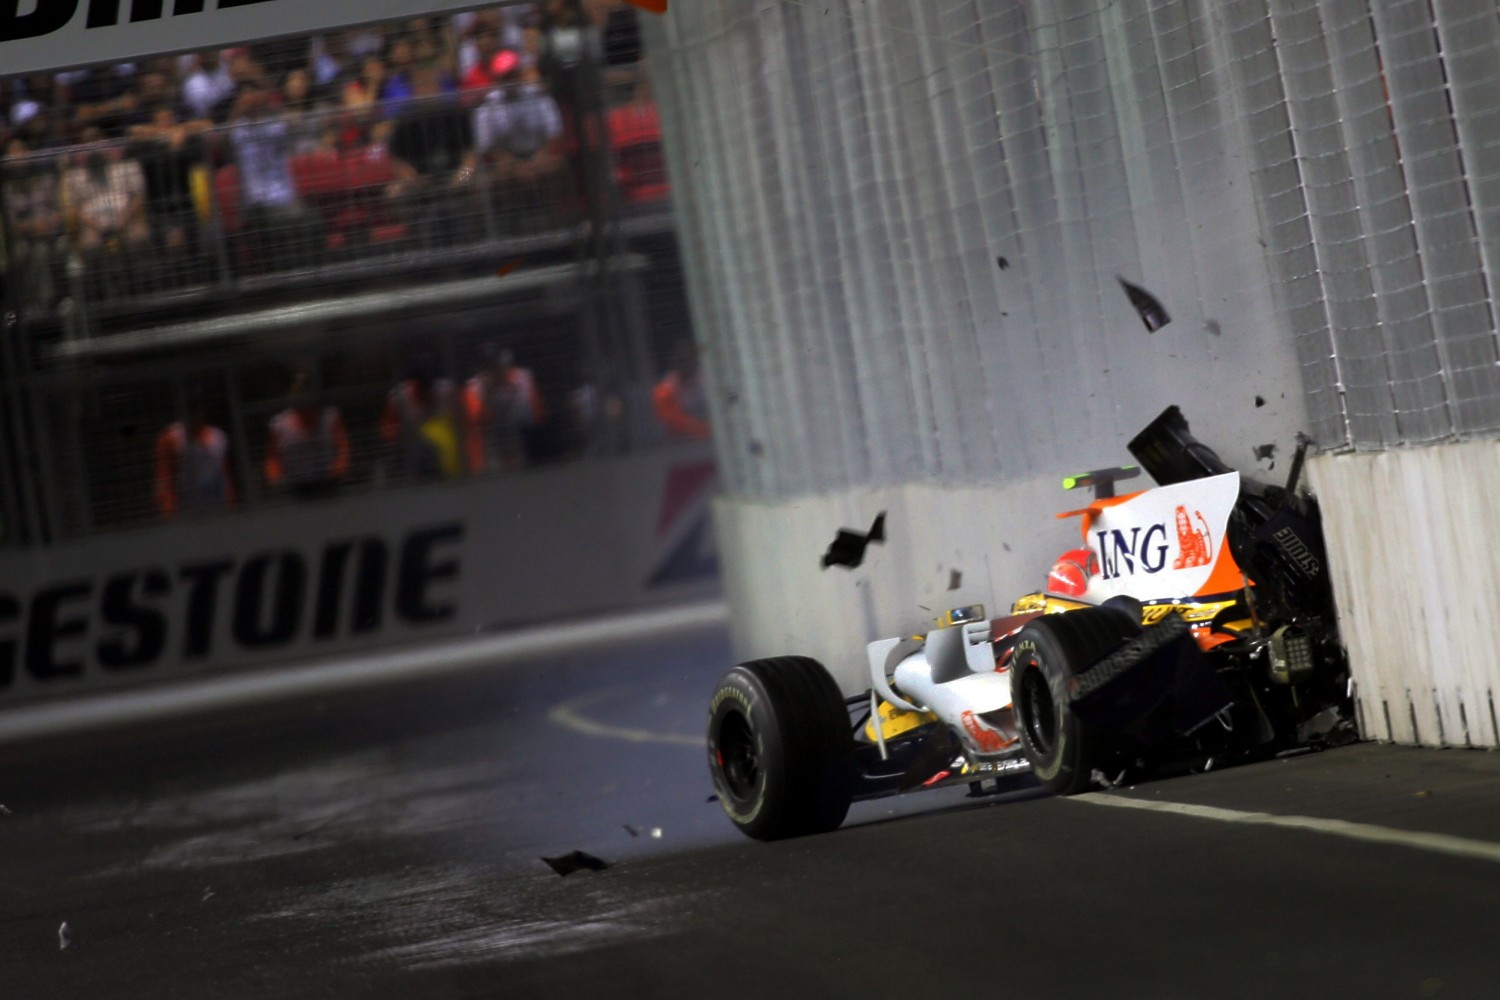 Het beslissende moment in de race. Piquet jr. crasht, waardoor Alonso wint.